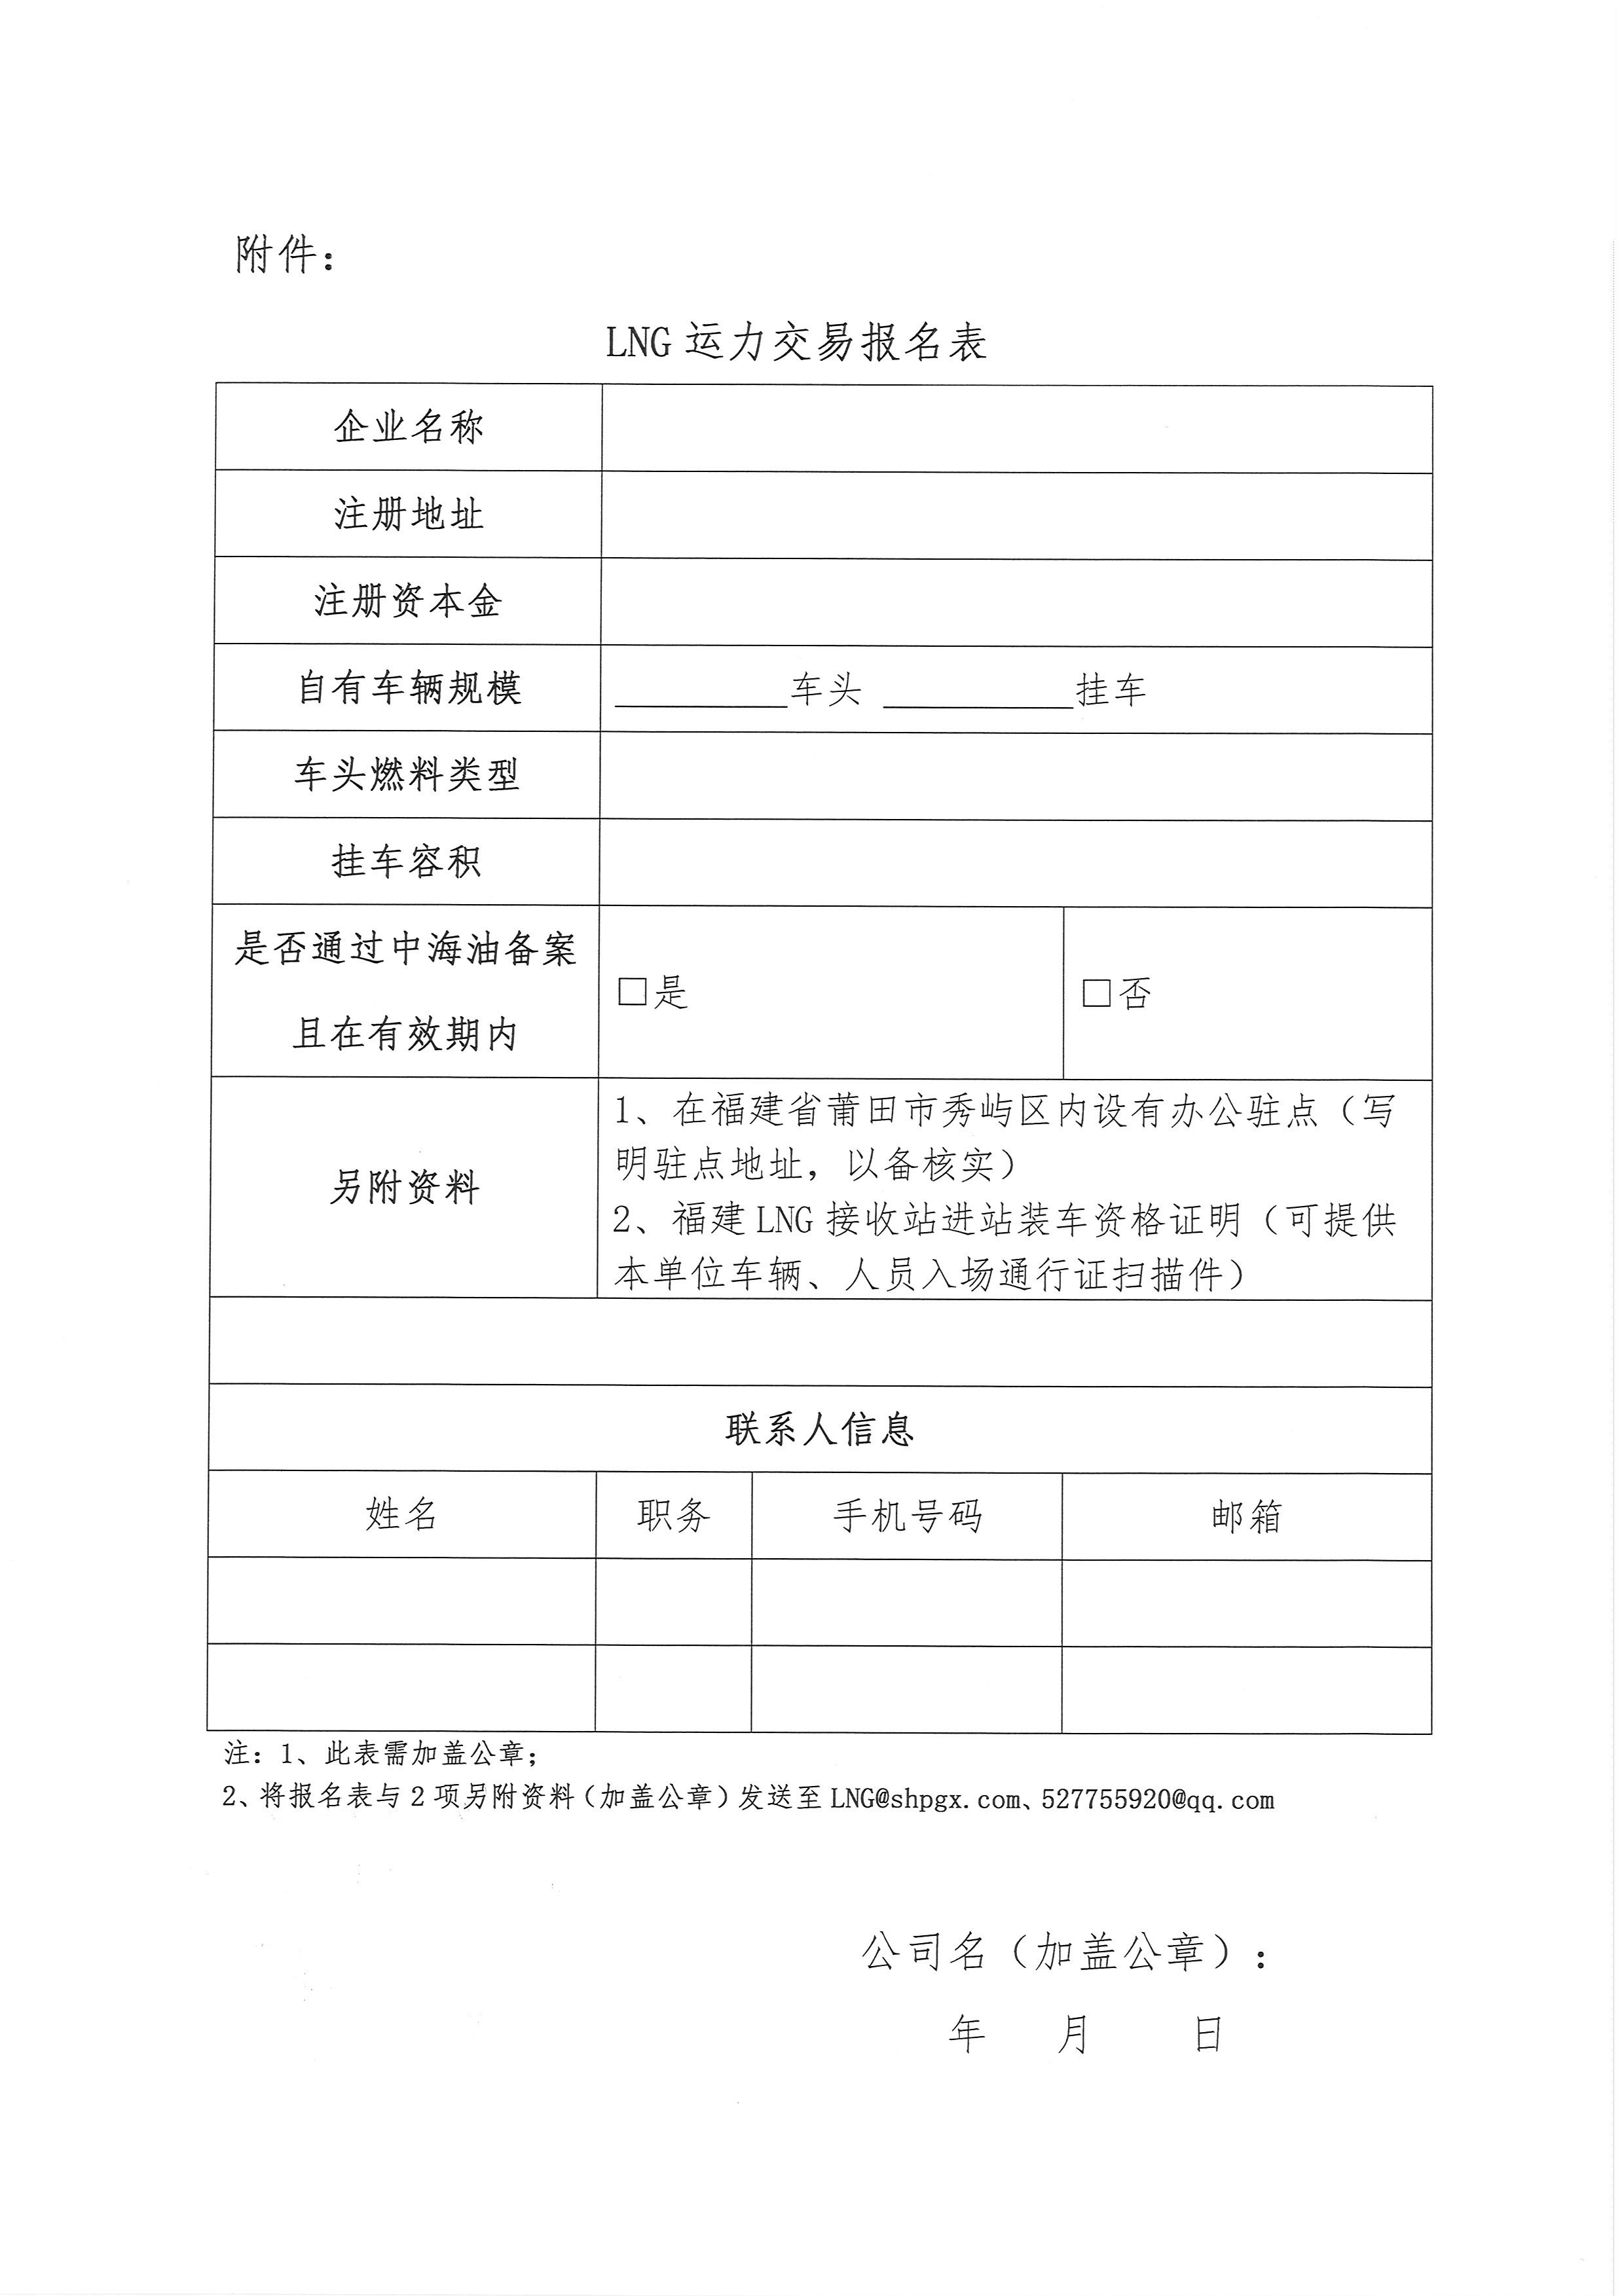 福建中闽物流有限公司-9、10月份竞价公告(3)_页面_7.png